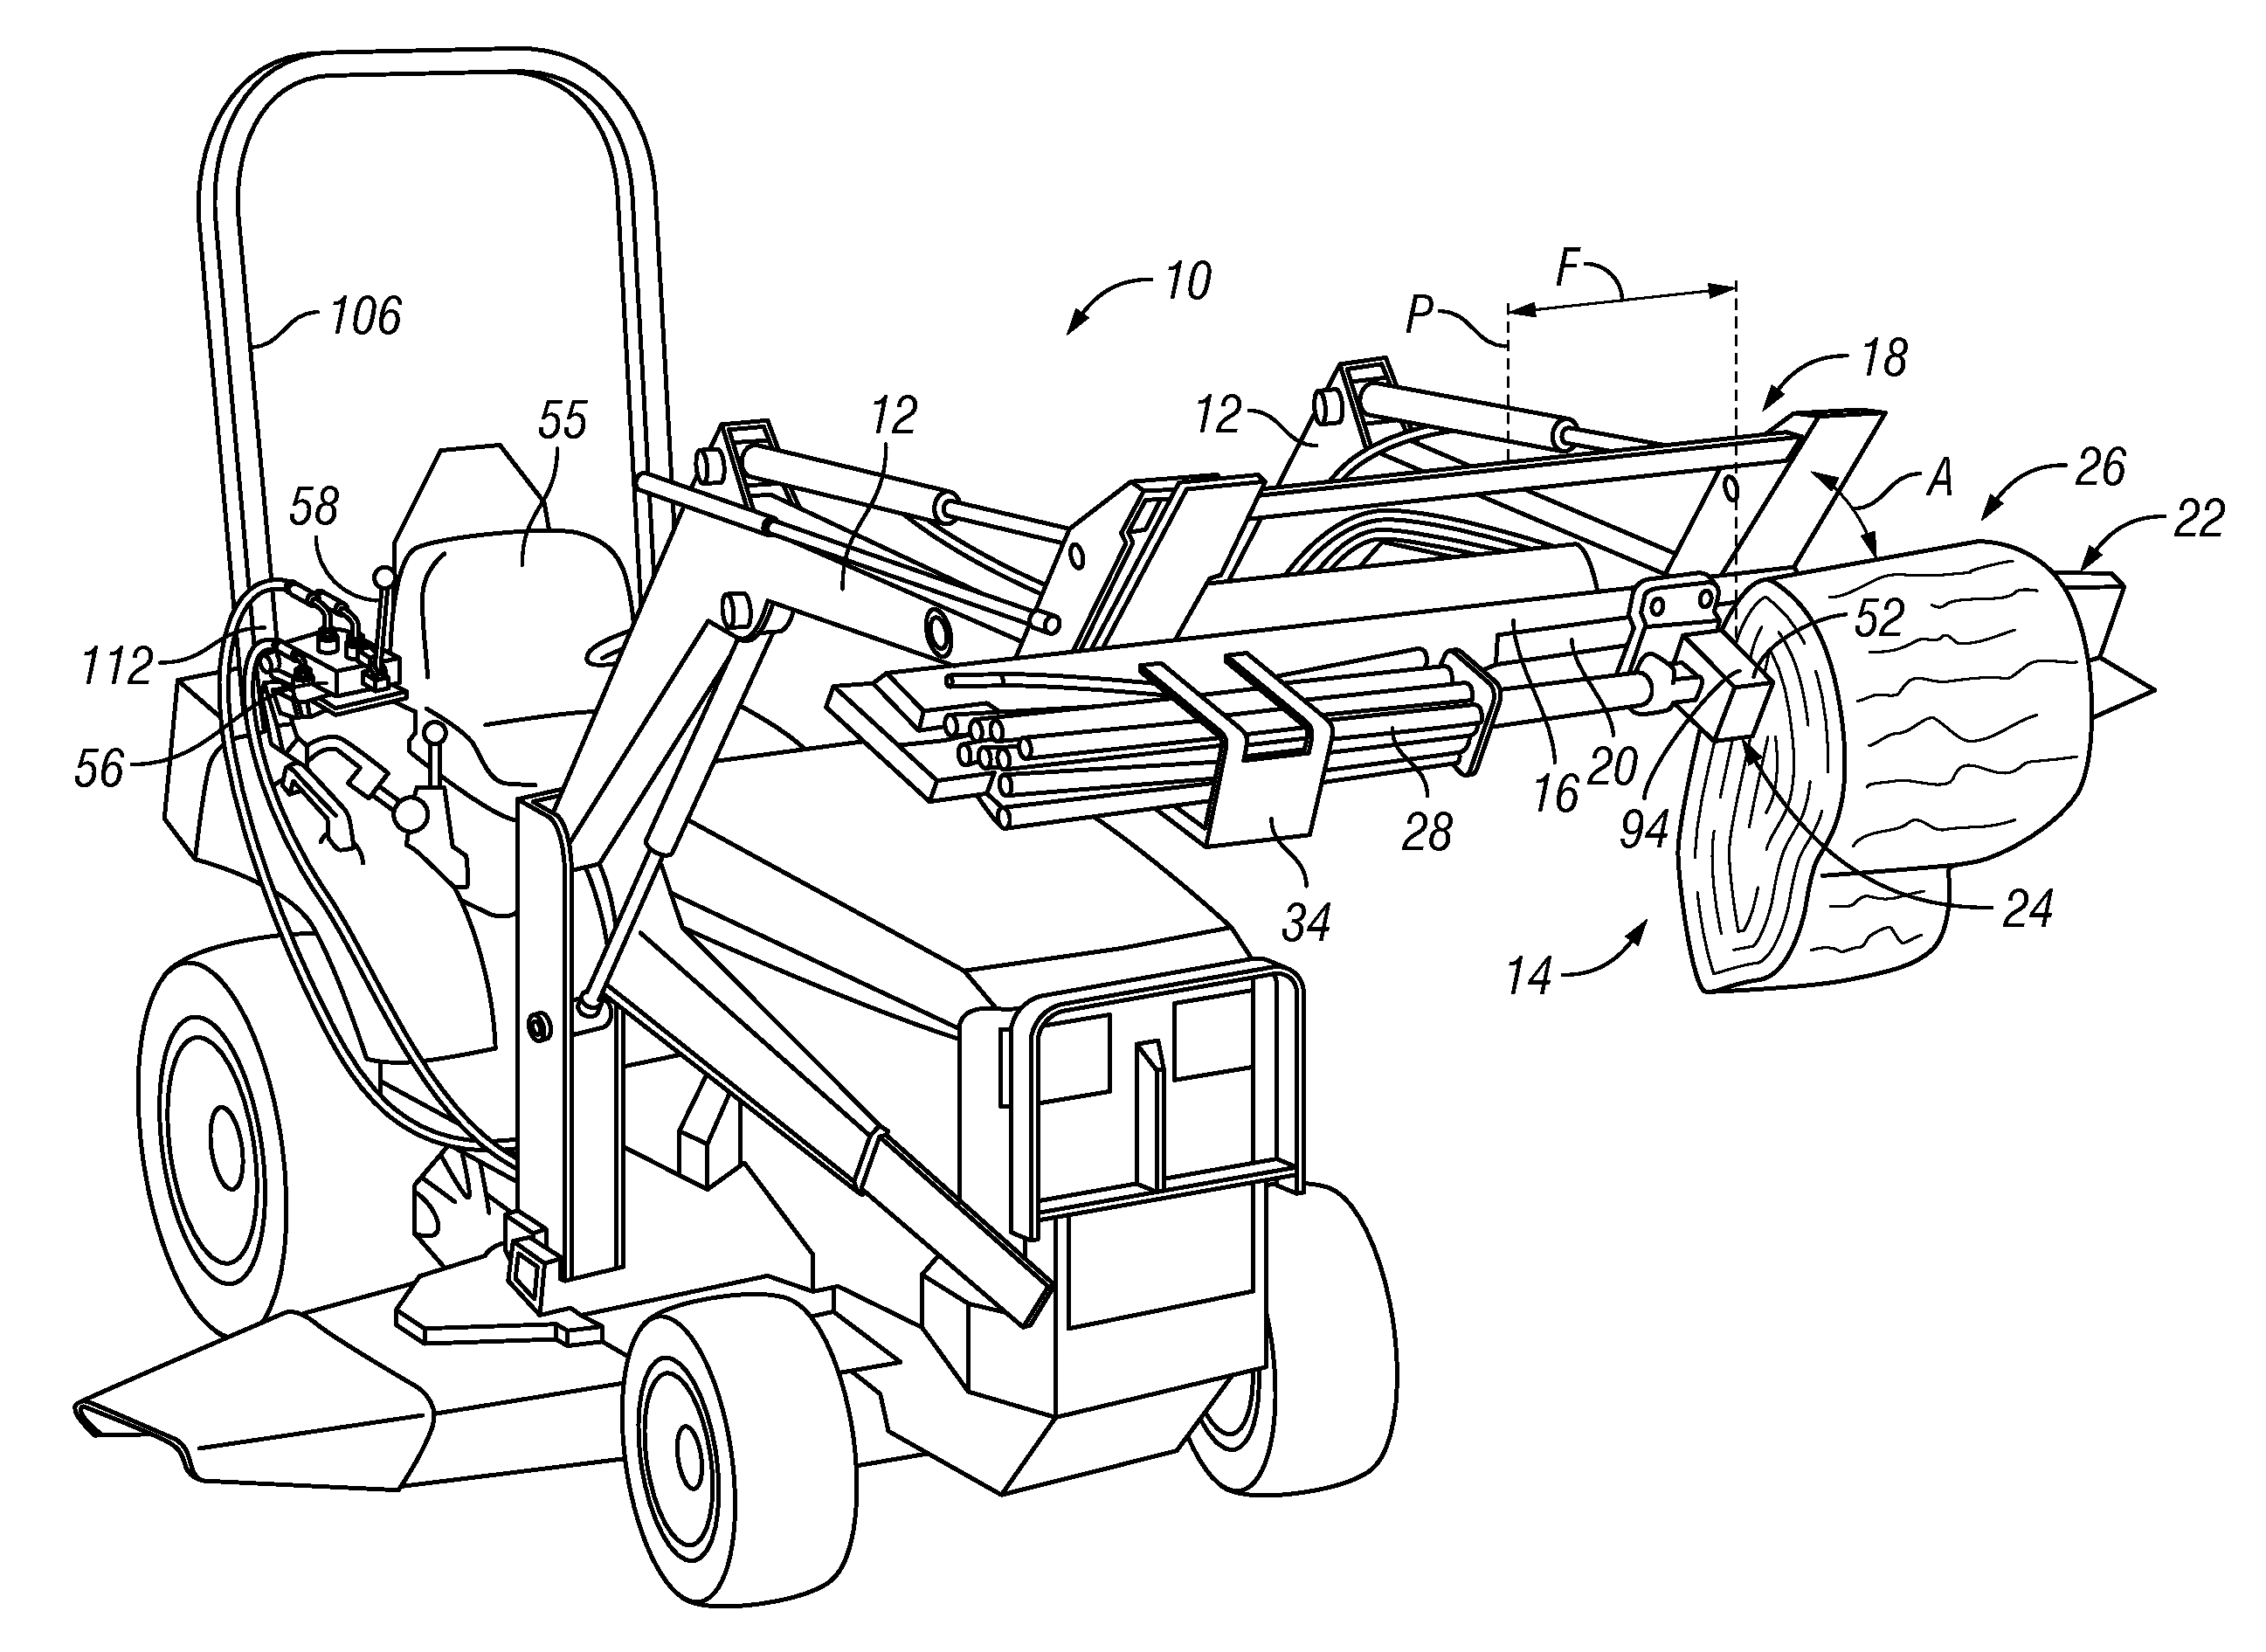 Log splitter system for a front-loader tractor